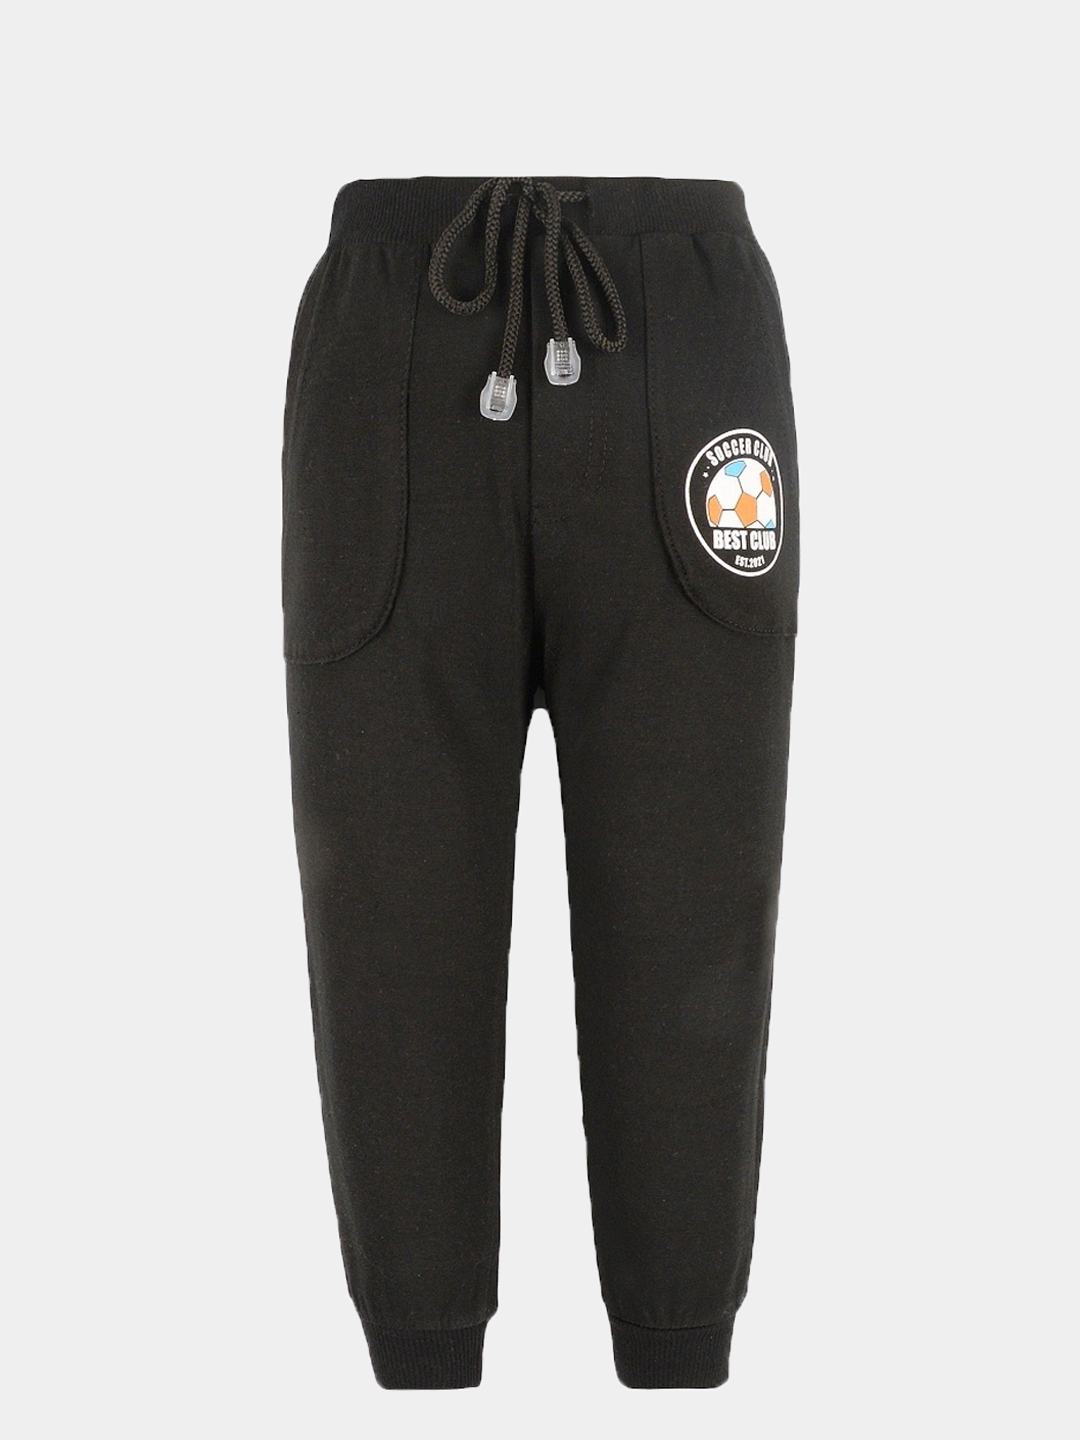 Детские спортивные брюки, штаны для мальчика (2 - 6 лет) купить по цене 449₽ в интернет-магазине KazanExpress